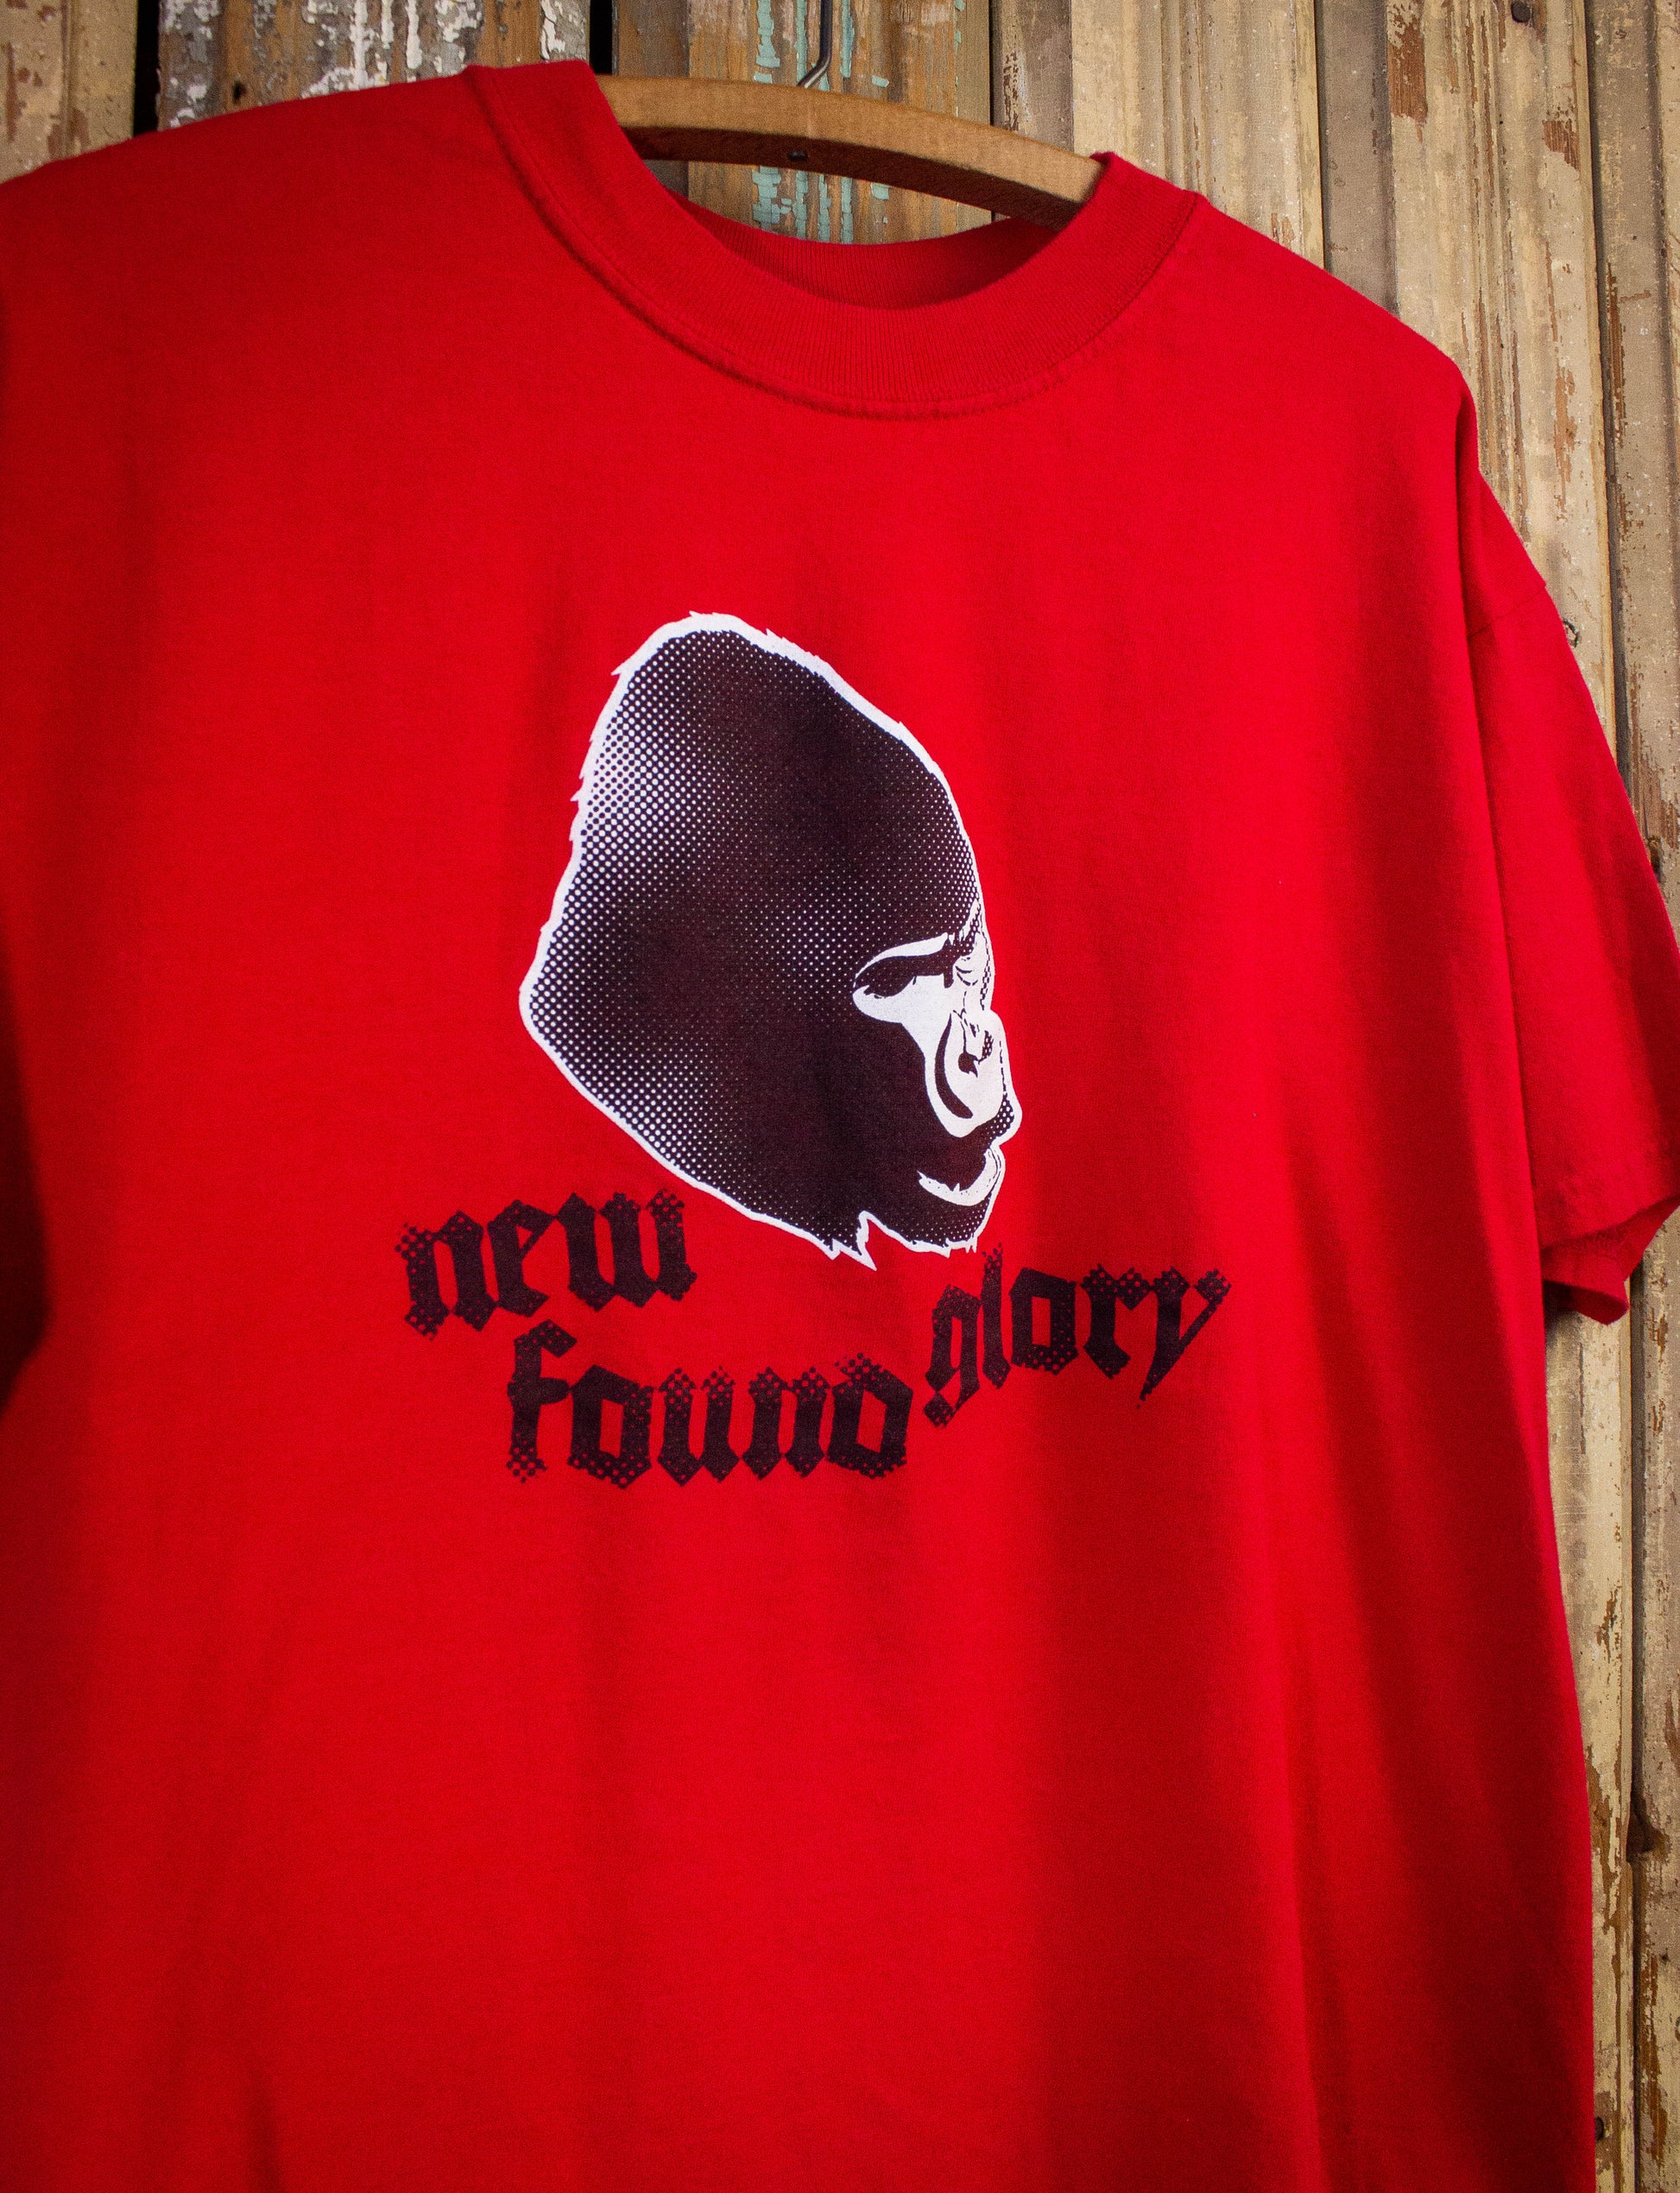 Vintage New Found Glory Gorilla Concert T Shirt 2000s Red Medium